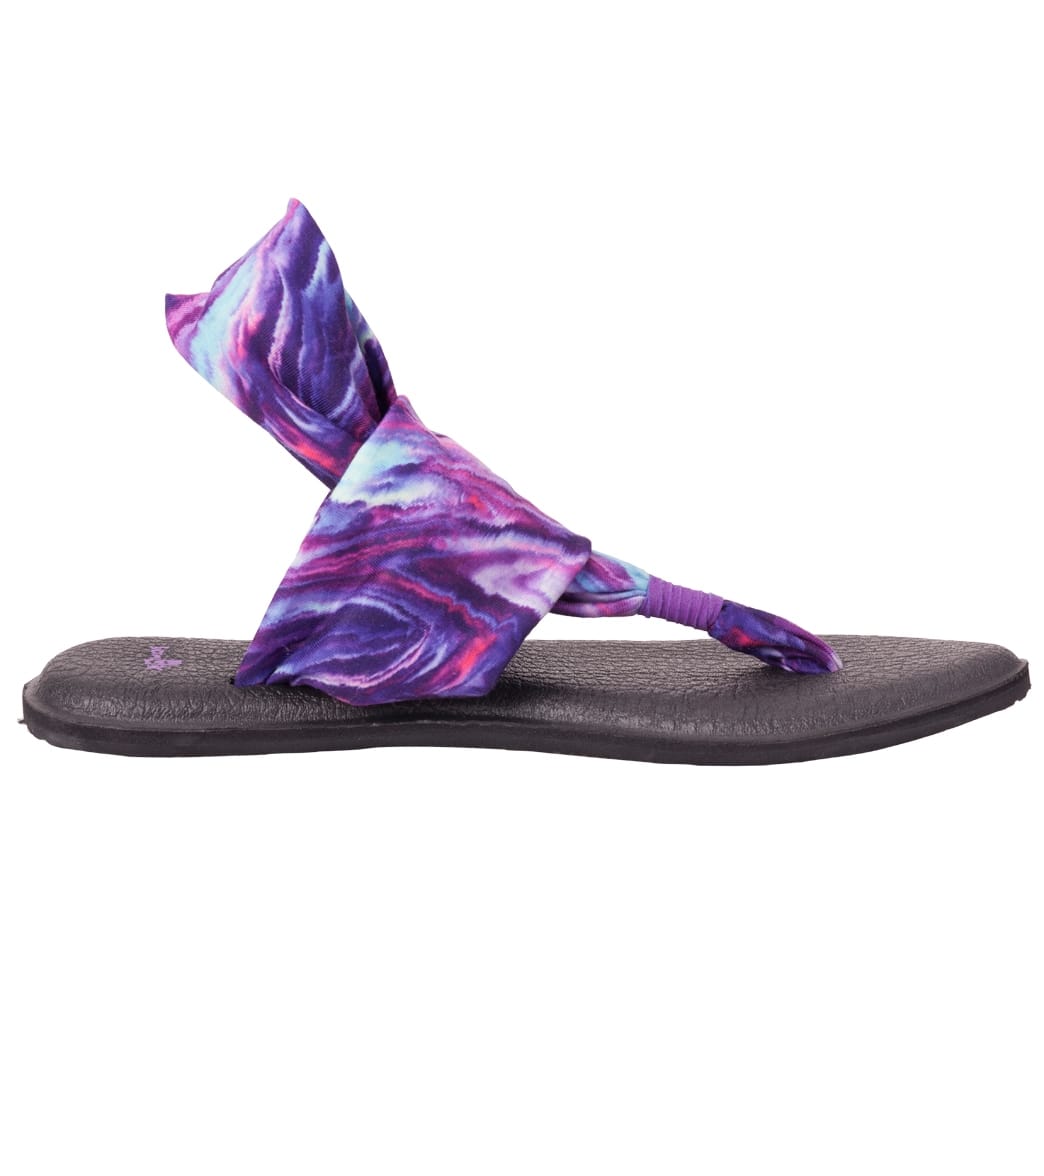 Sanuk Yoga Sling 2 Prints Sandal Purple/Blue Marble